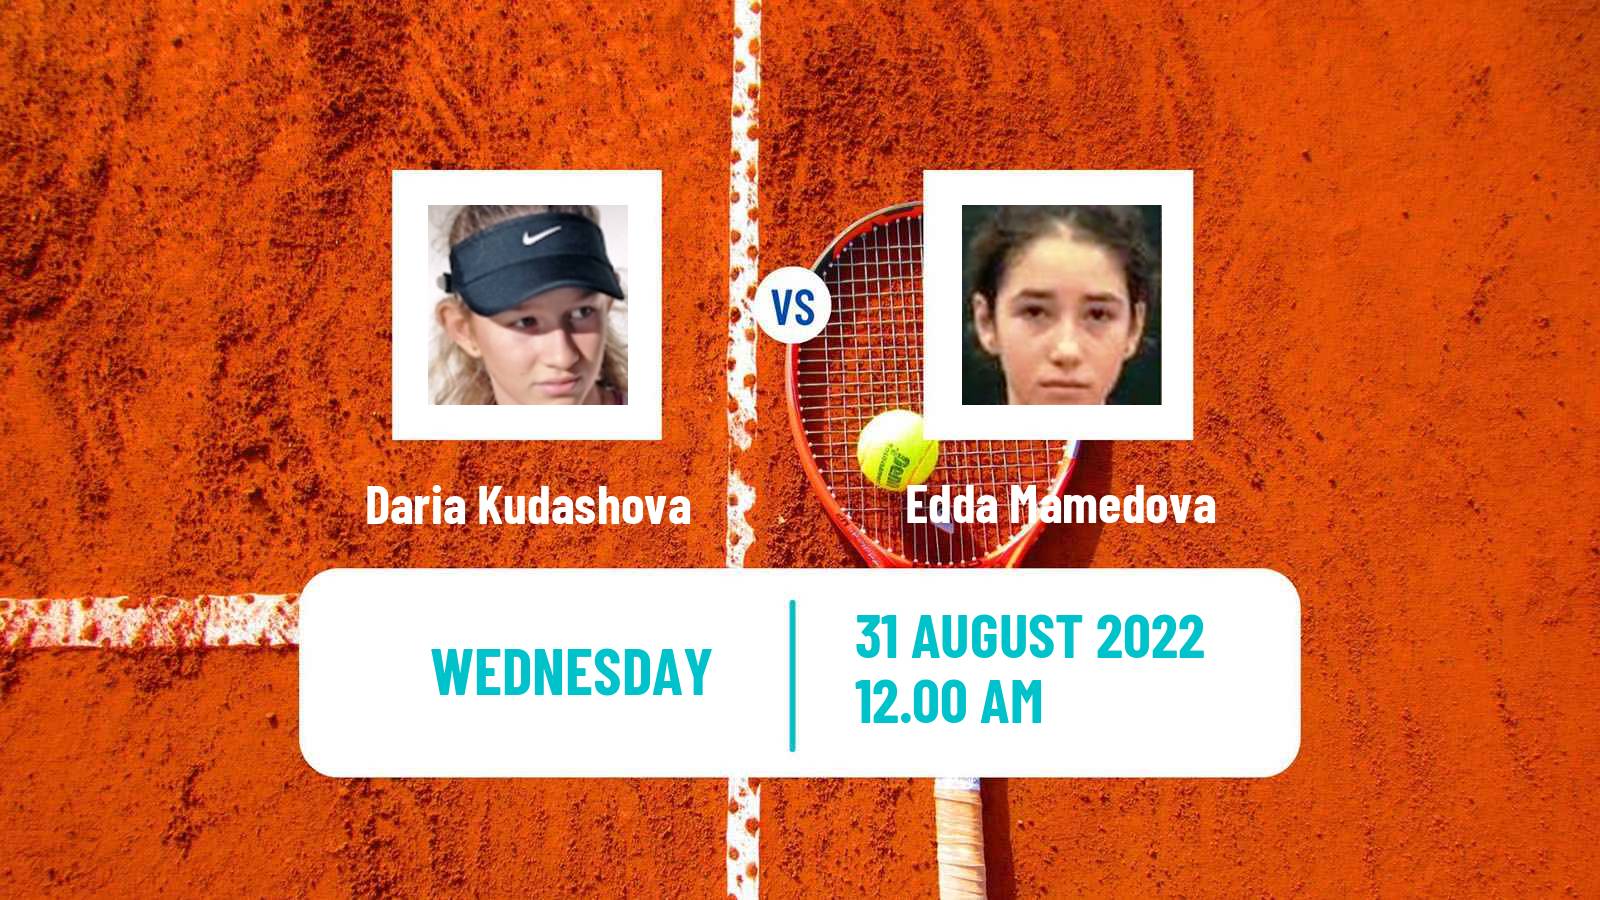 Tennis ITF Tournaments Daria Kudashova - Edda Mamedova